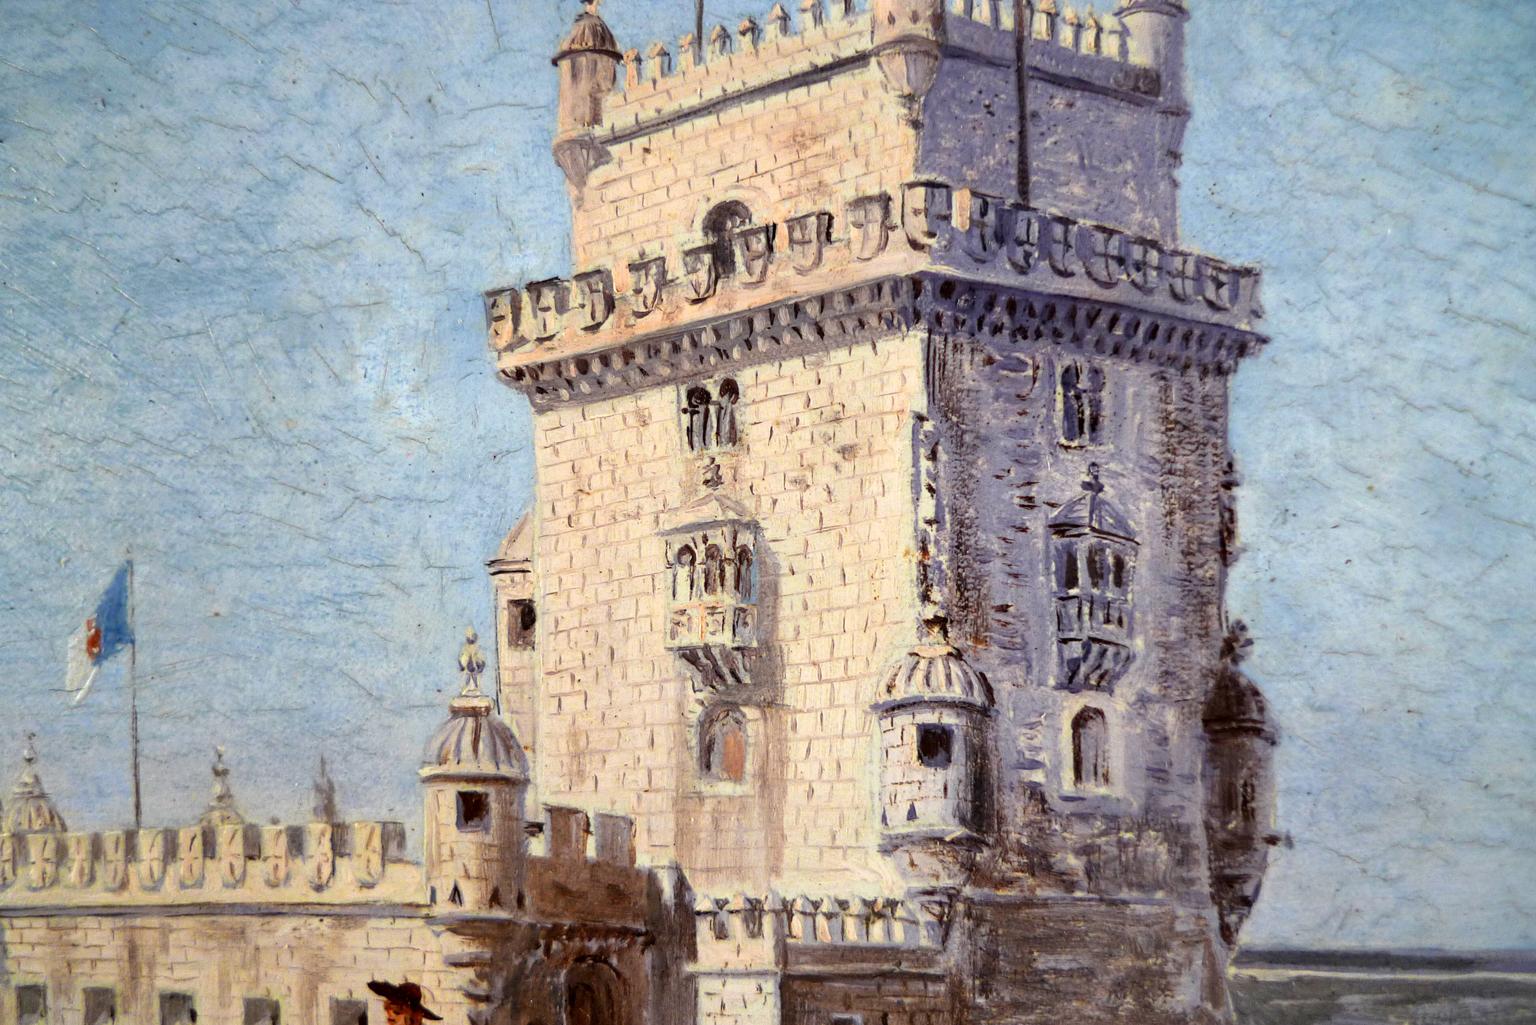 ENRIQUE ATALAYA
Spanish, 1851 - 1913
BELEM´S TOWER, LISBON
signed 